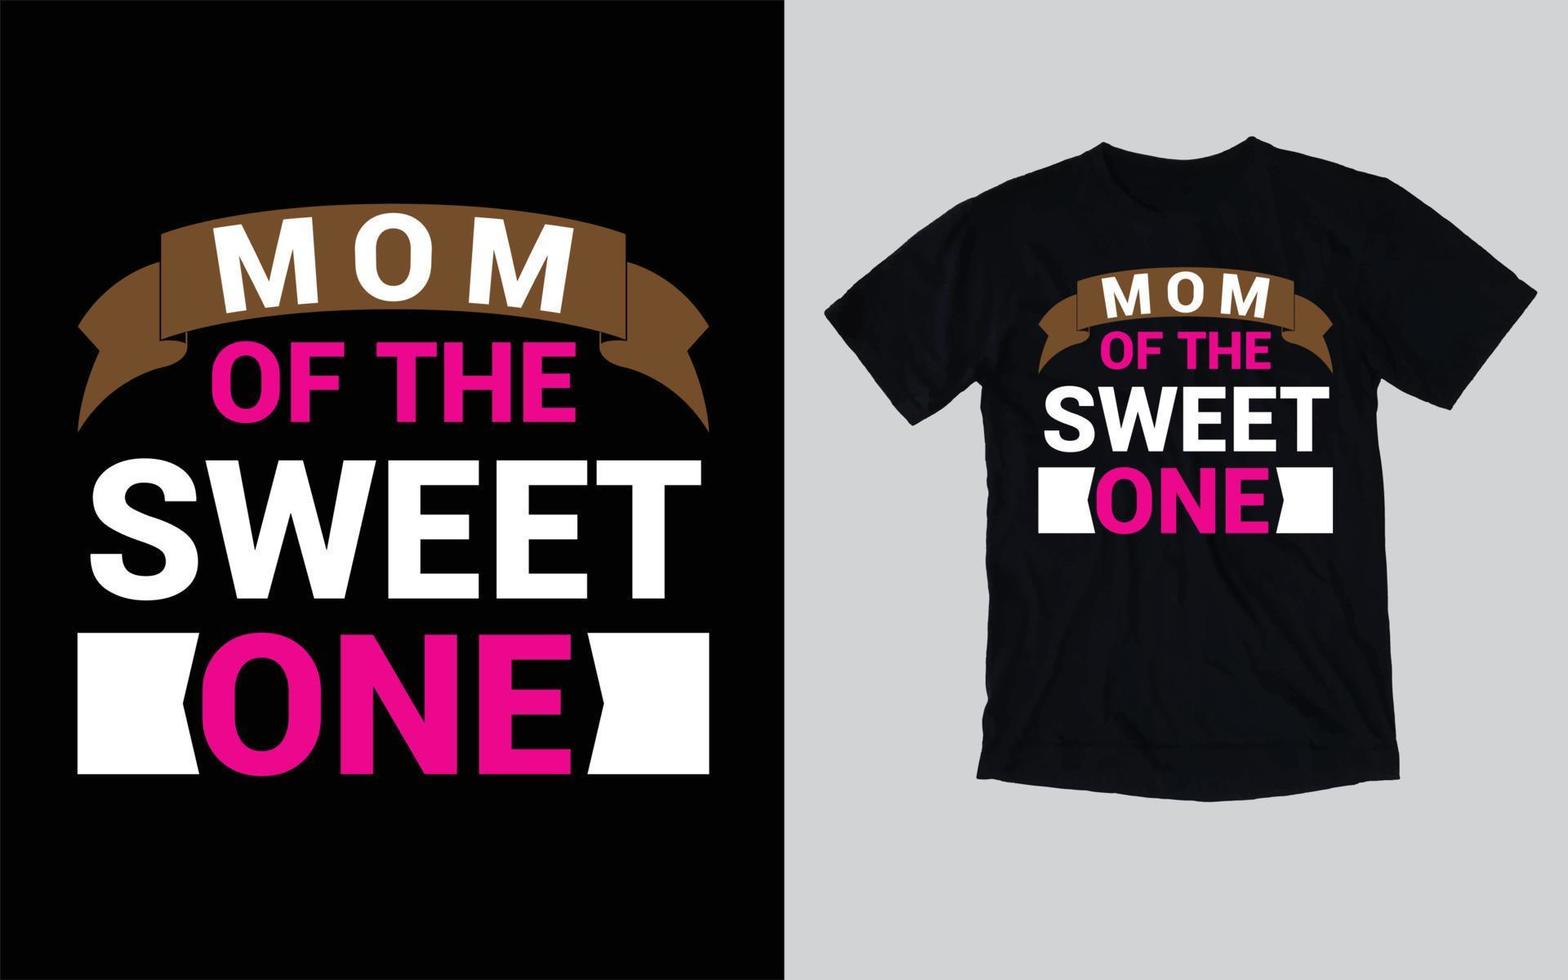 diseño de camiseta de mamá del amor del día de la madre vector